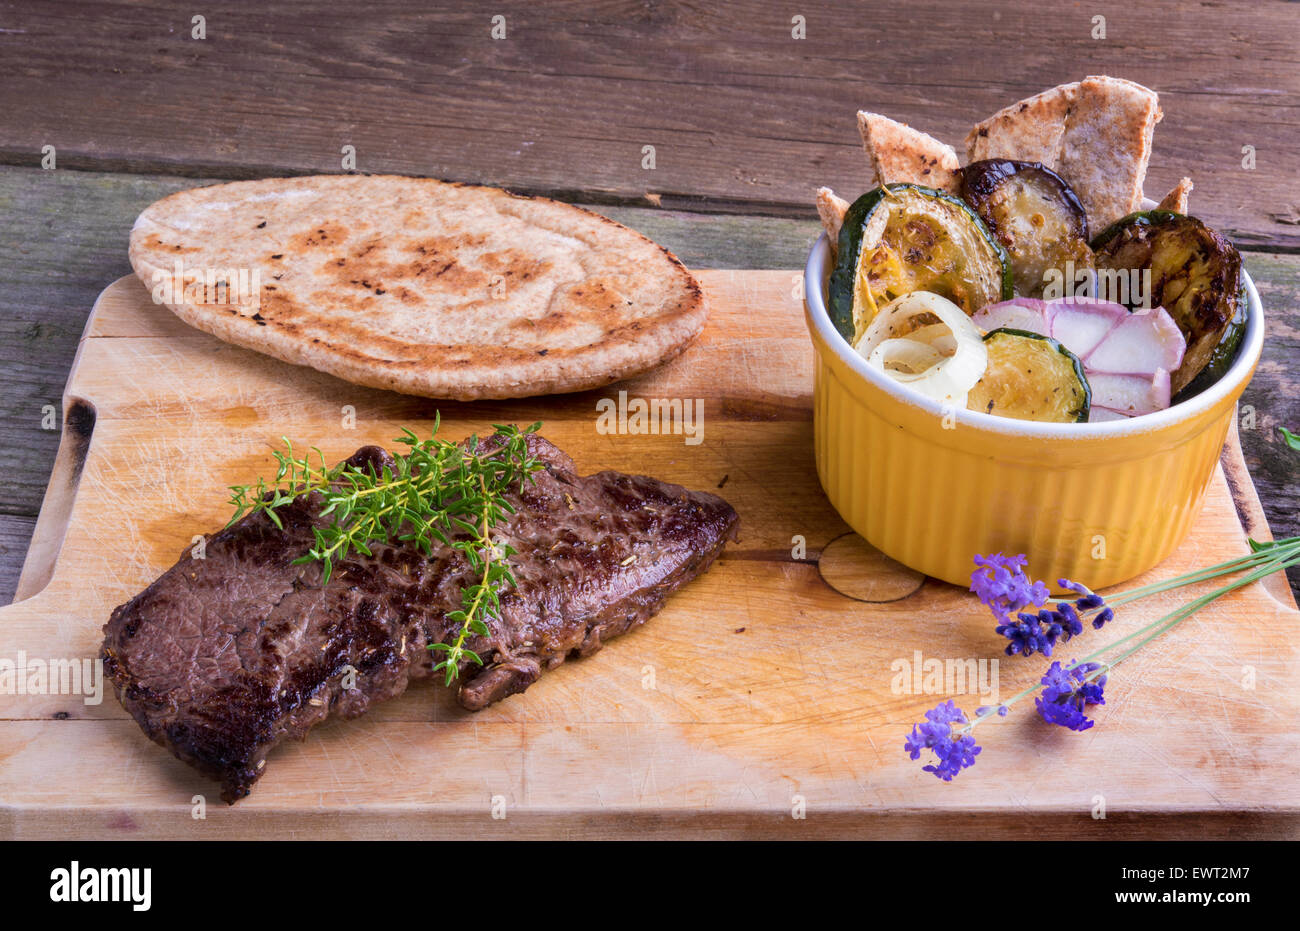 La viande de cheval style provençal entrecote steak à la ratatouille et pains plats servis sur une planche en bois décoré avec lavande et Banque D'Images